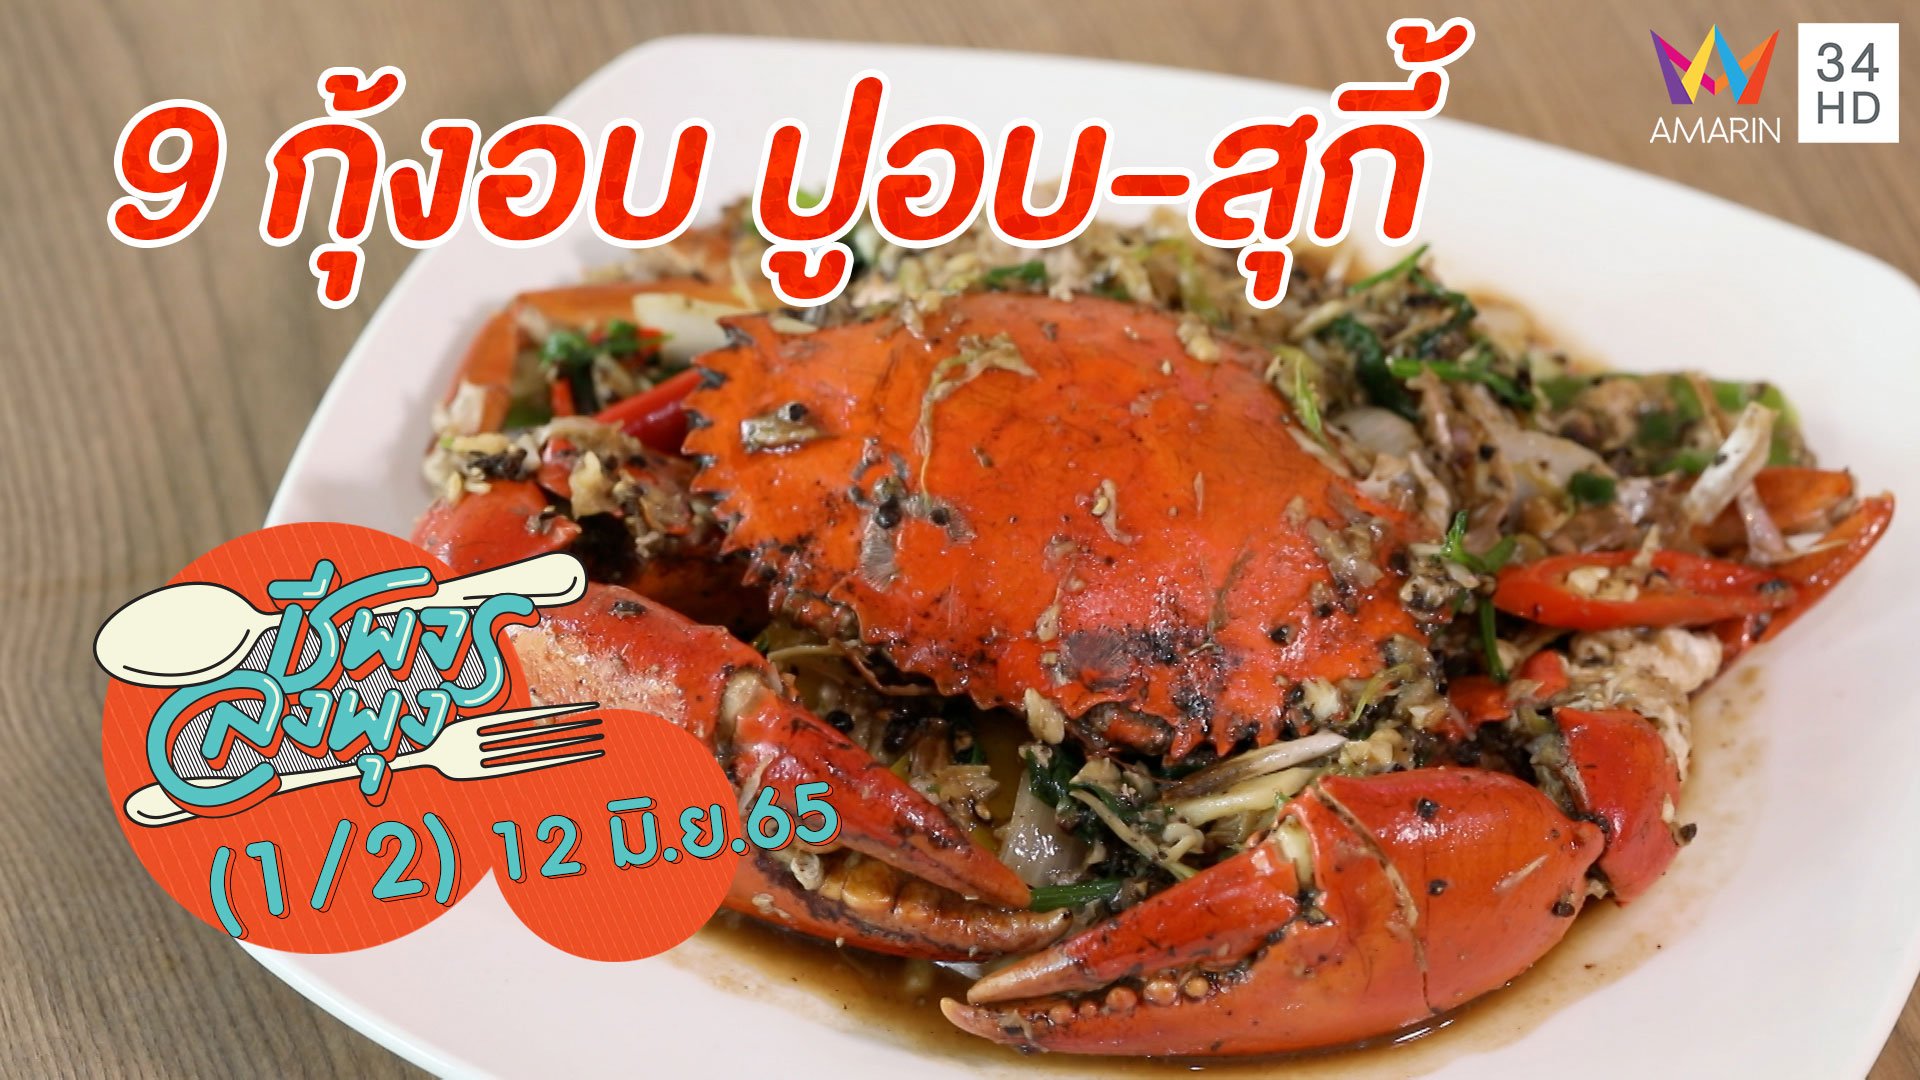 อาหารทะเลคุณภาพดีเยี่ยม @ 9 กุ้งอบ ปูอบ-สุกี้ | ชีพจรลงพุง | 12 มิ.ย. 65 (1/2) | AMARIN TVHD34